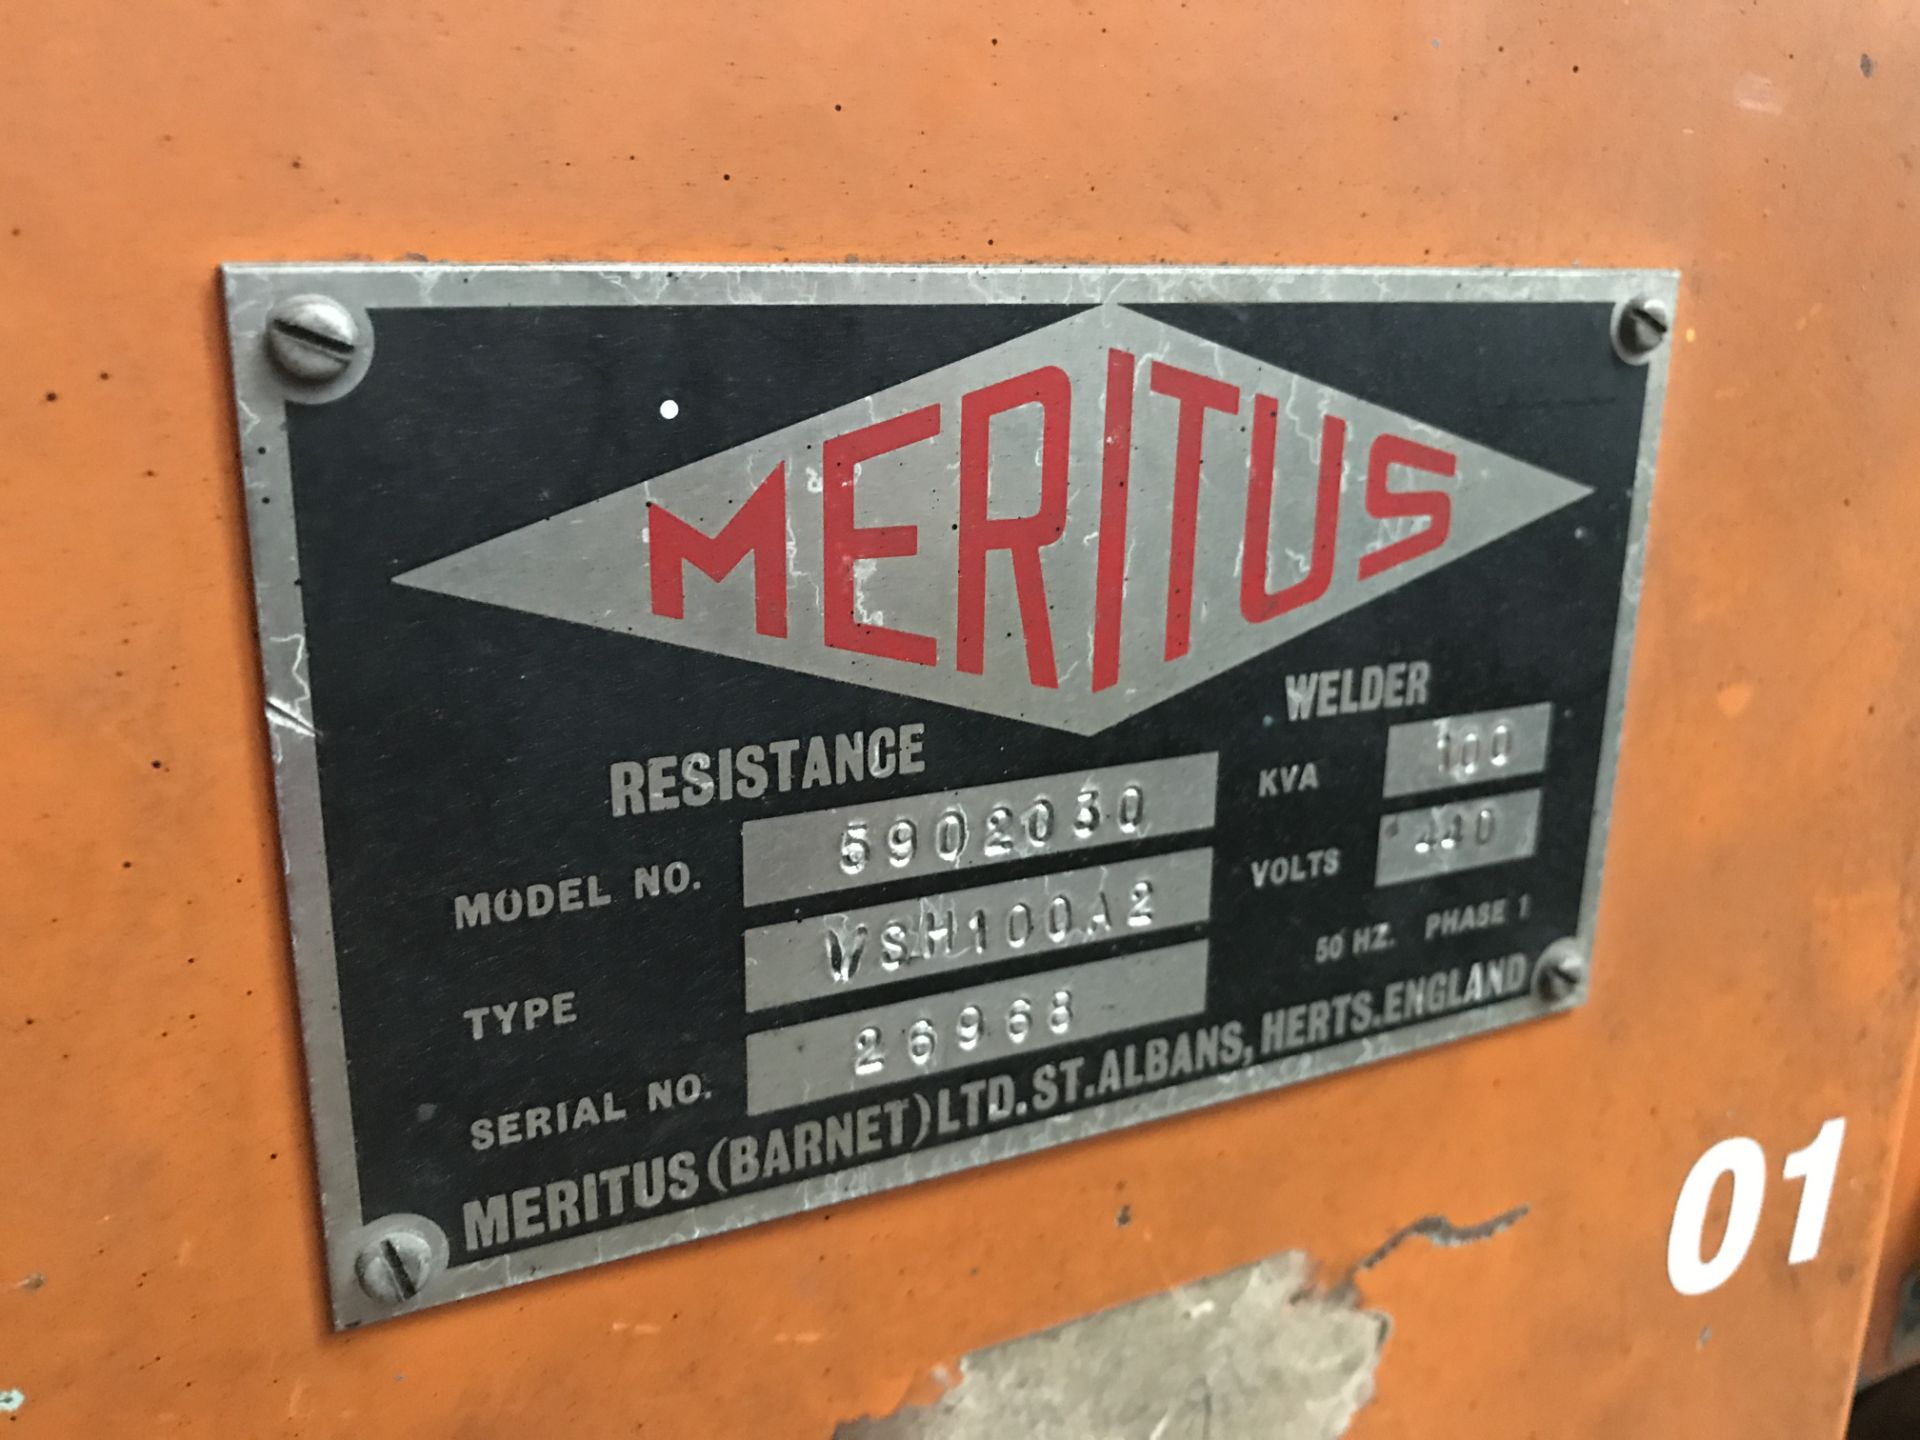 Meritus 5902030 Resistance Spot Welder, Type VSH10 - Image 4 of 4